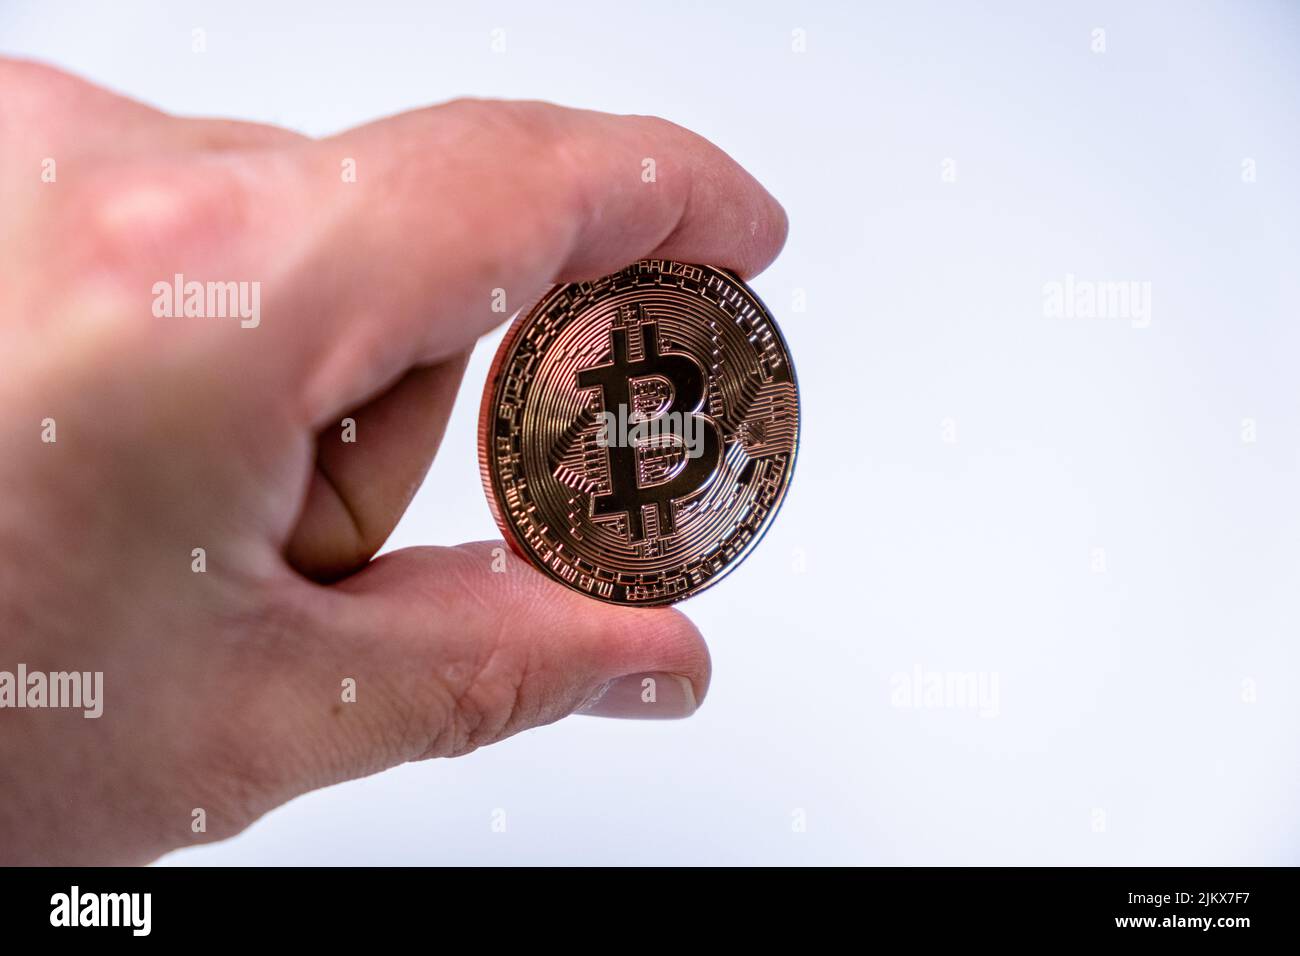 Männlicher Handfinger mit Bitcoin Kryptowährung Münze. Nahaufnahme einer Roségold-Bitmünze auf weißem Hintergrund. BTC beliebteste Krypto-Währung Mo Stockfoto